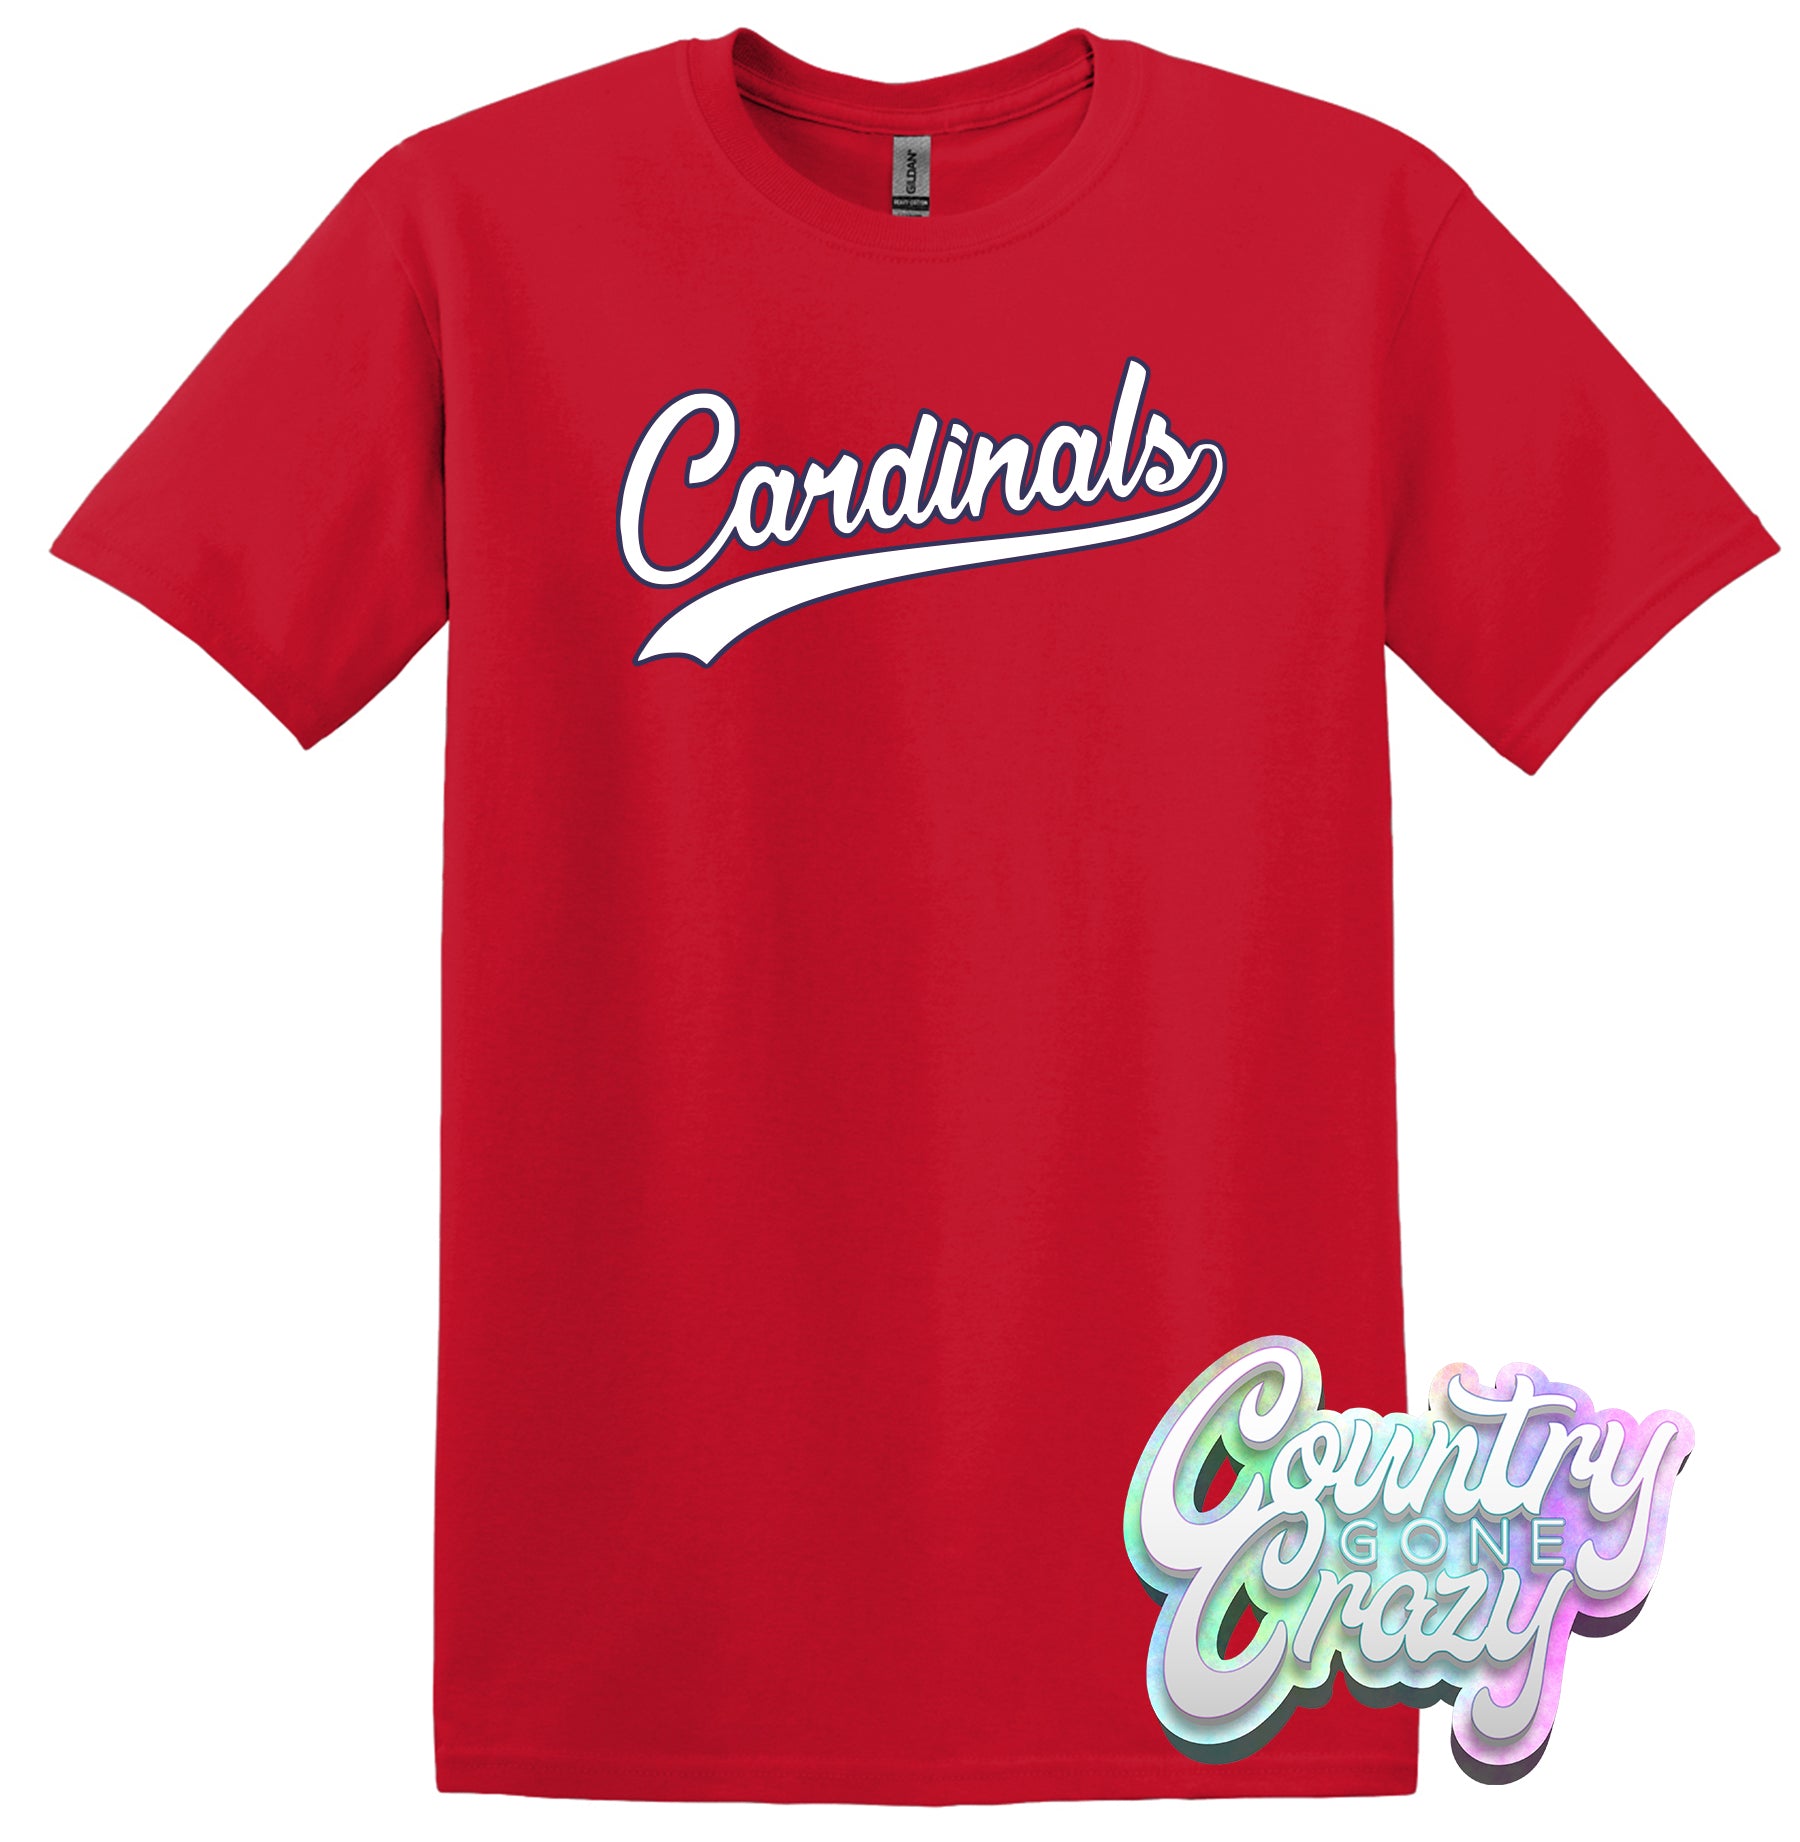 st louis cardinals t shirt